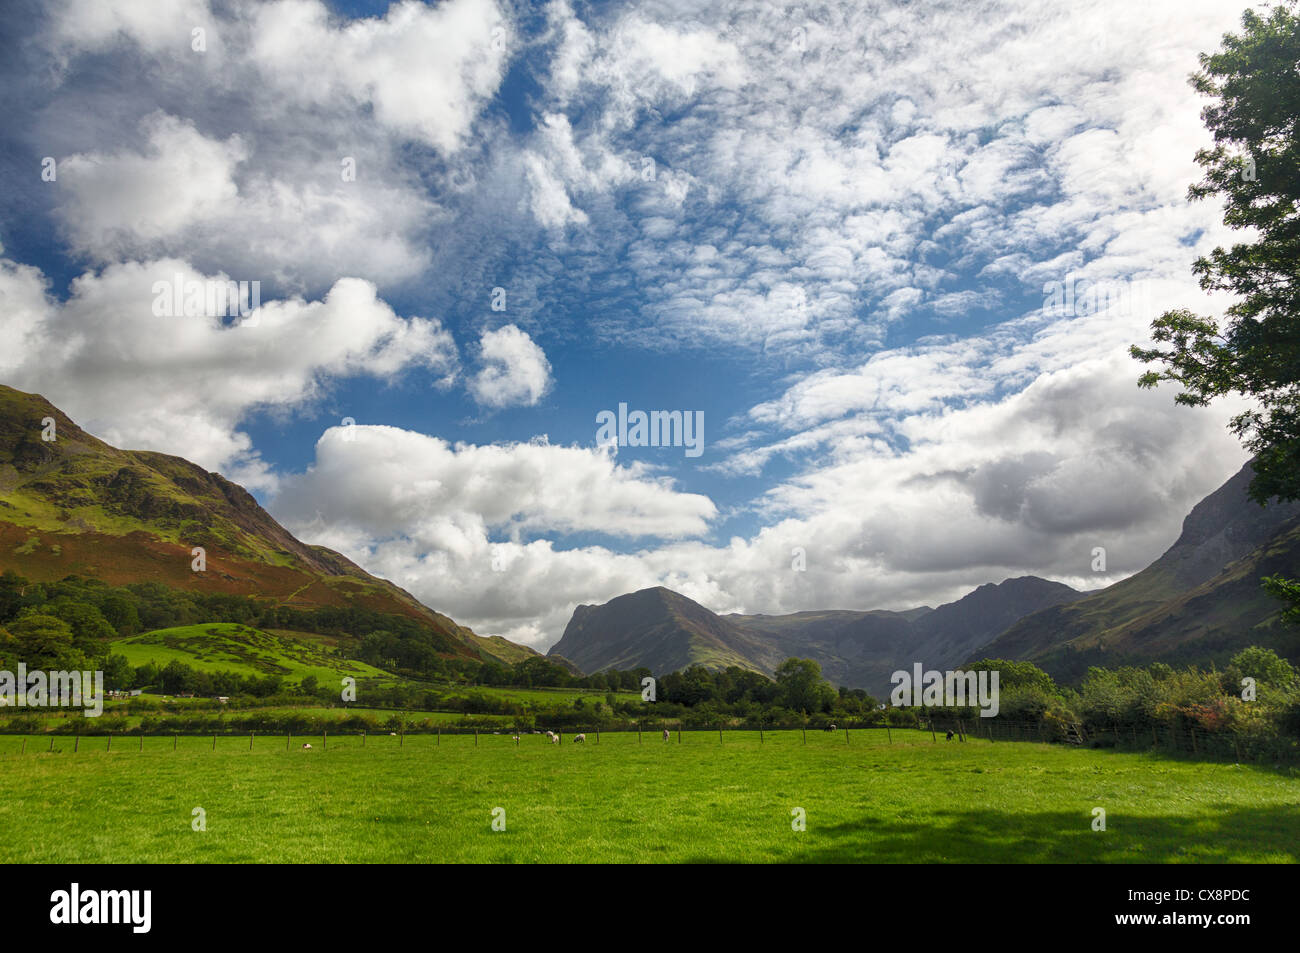 Des moutons paissant dans le pré en vertu de l'Fleetwith Pike par Buttermere Lake District en anglais Banque D'Images